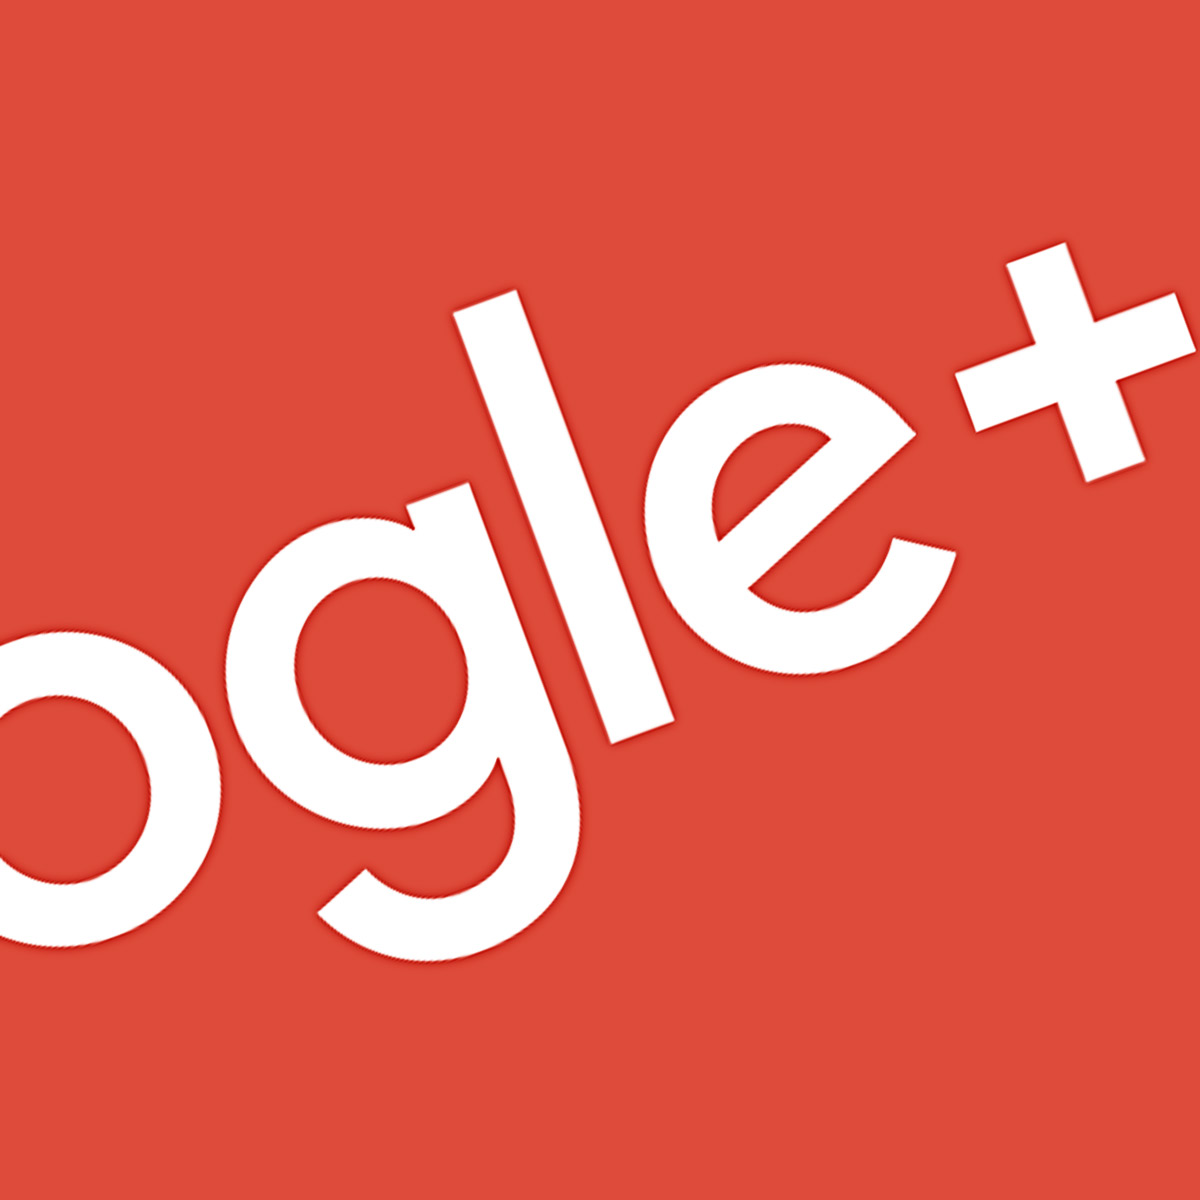 Google Plus chiude: ecco cosa fare